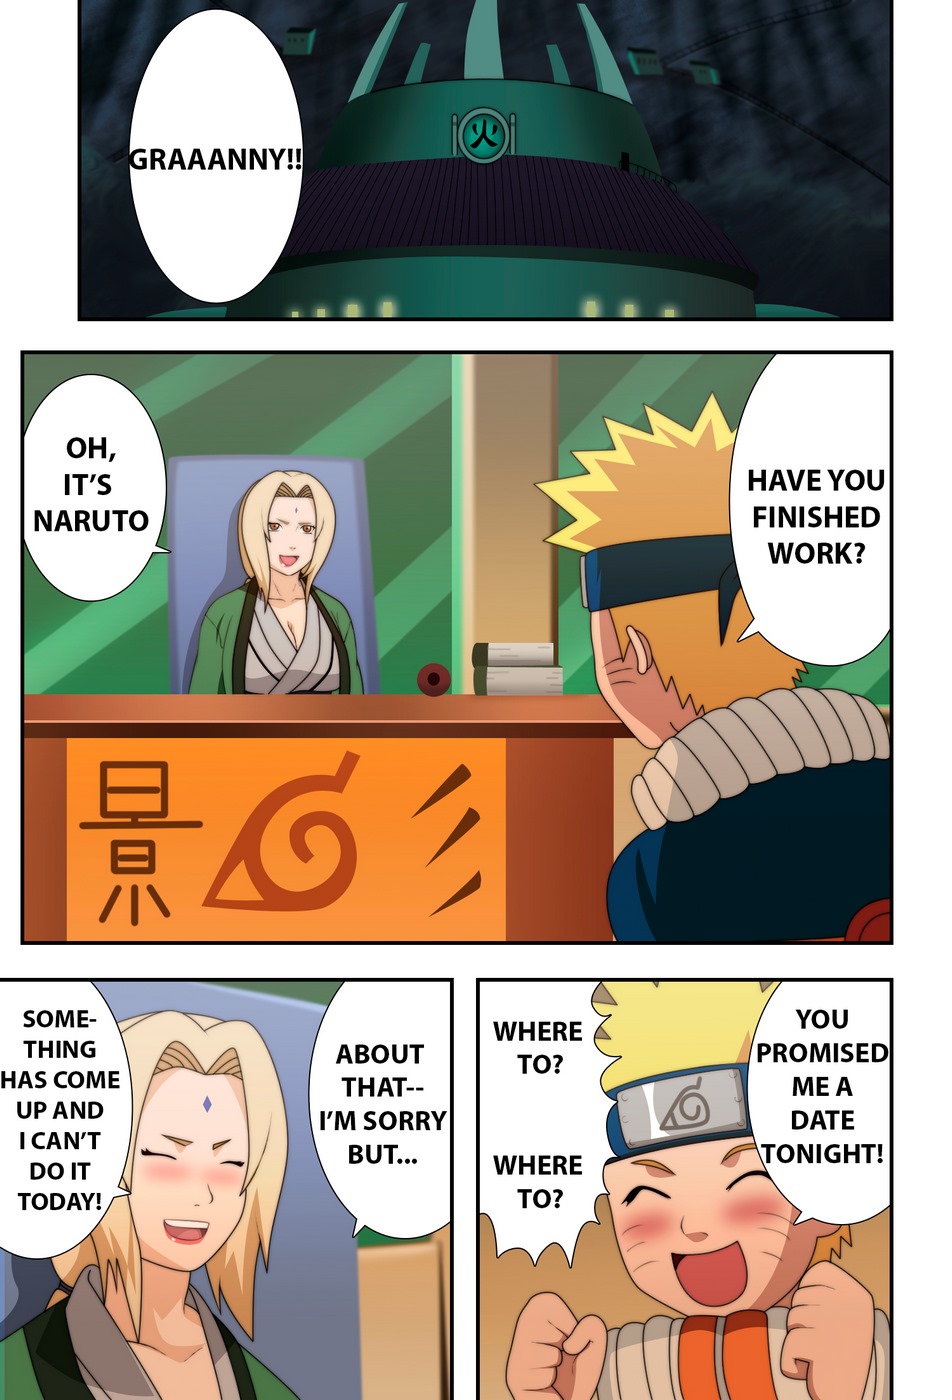 Naruto (naruho) chichikage grande Mama Ninja